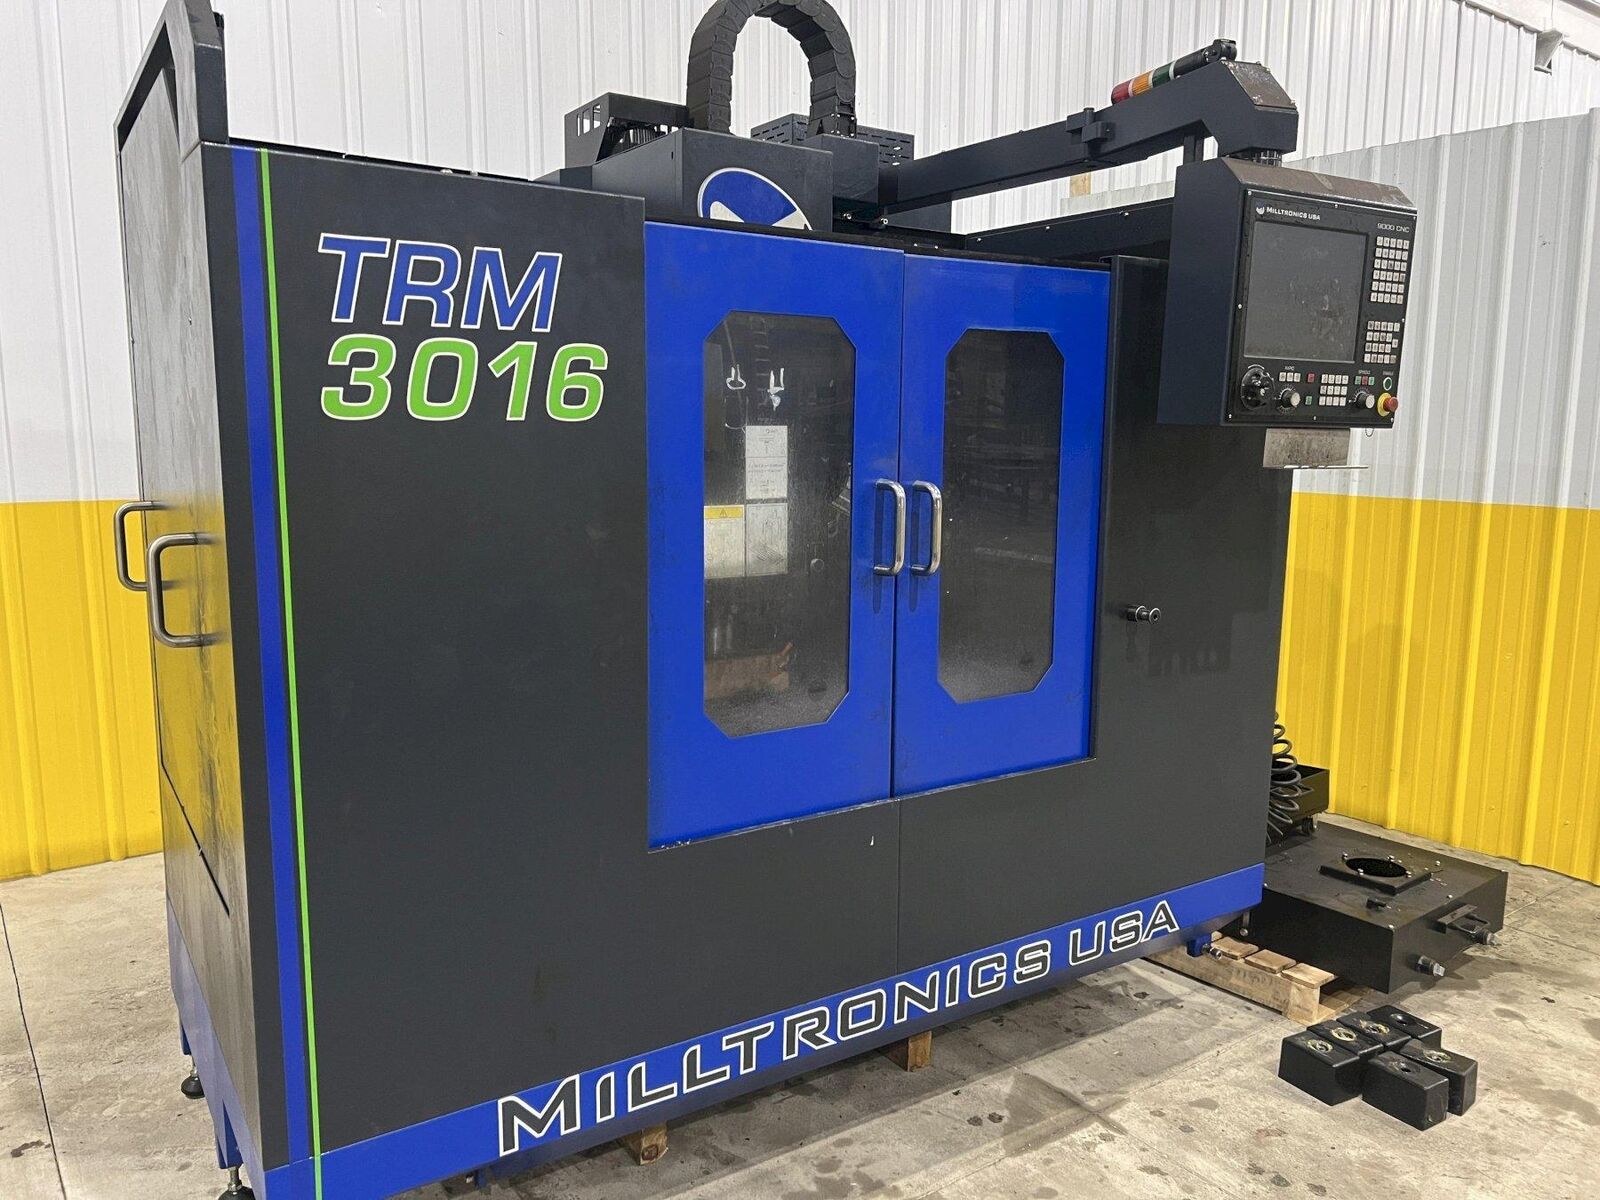 MILLTRONICS MODEL #TRM3016 CNC VERTICAL MACHINING CENTER: STOCK #20639